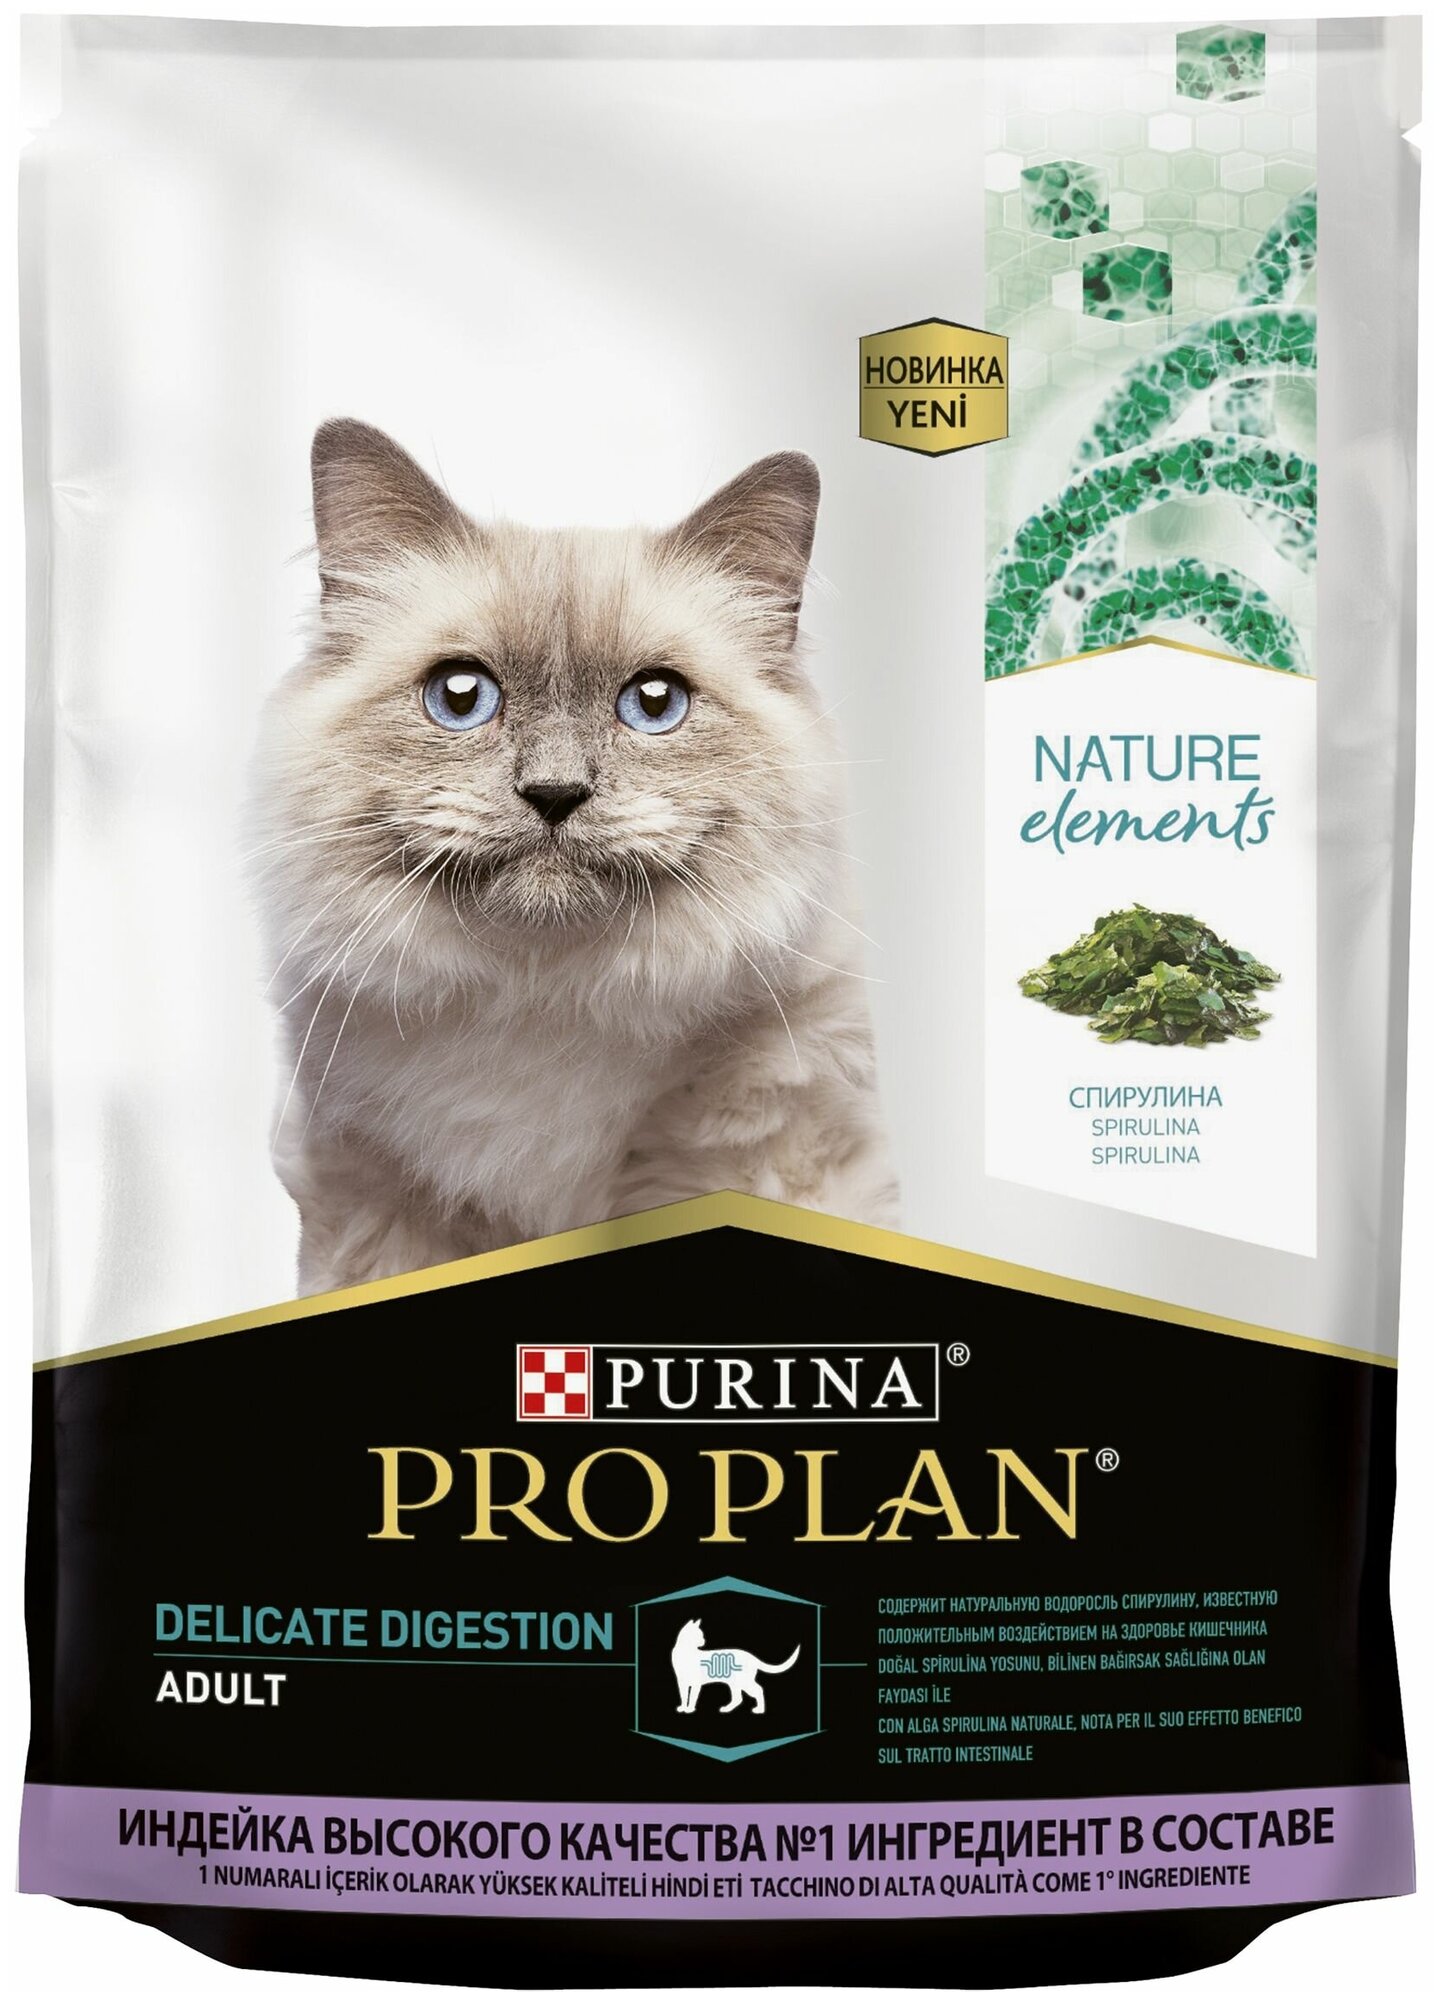 Сухой корм Pro Plan для взрослых кошек с чувствительным пищеварением или особыми предпочтениями в еде с высоким содержанием индейки 200 г х 5шт